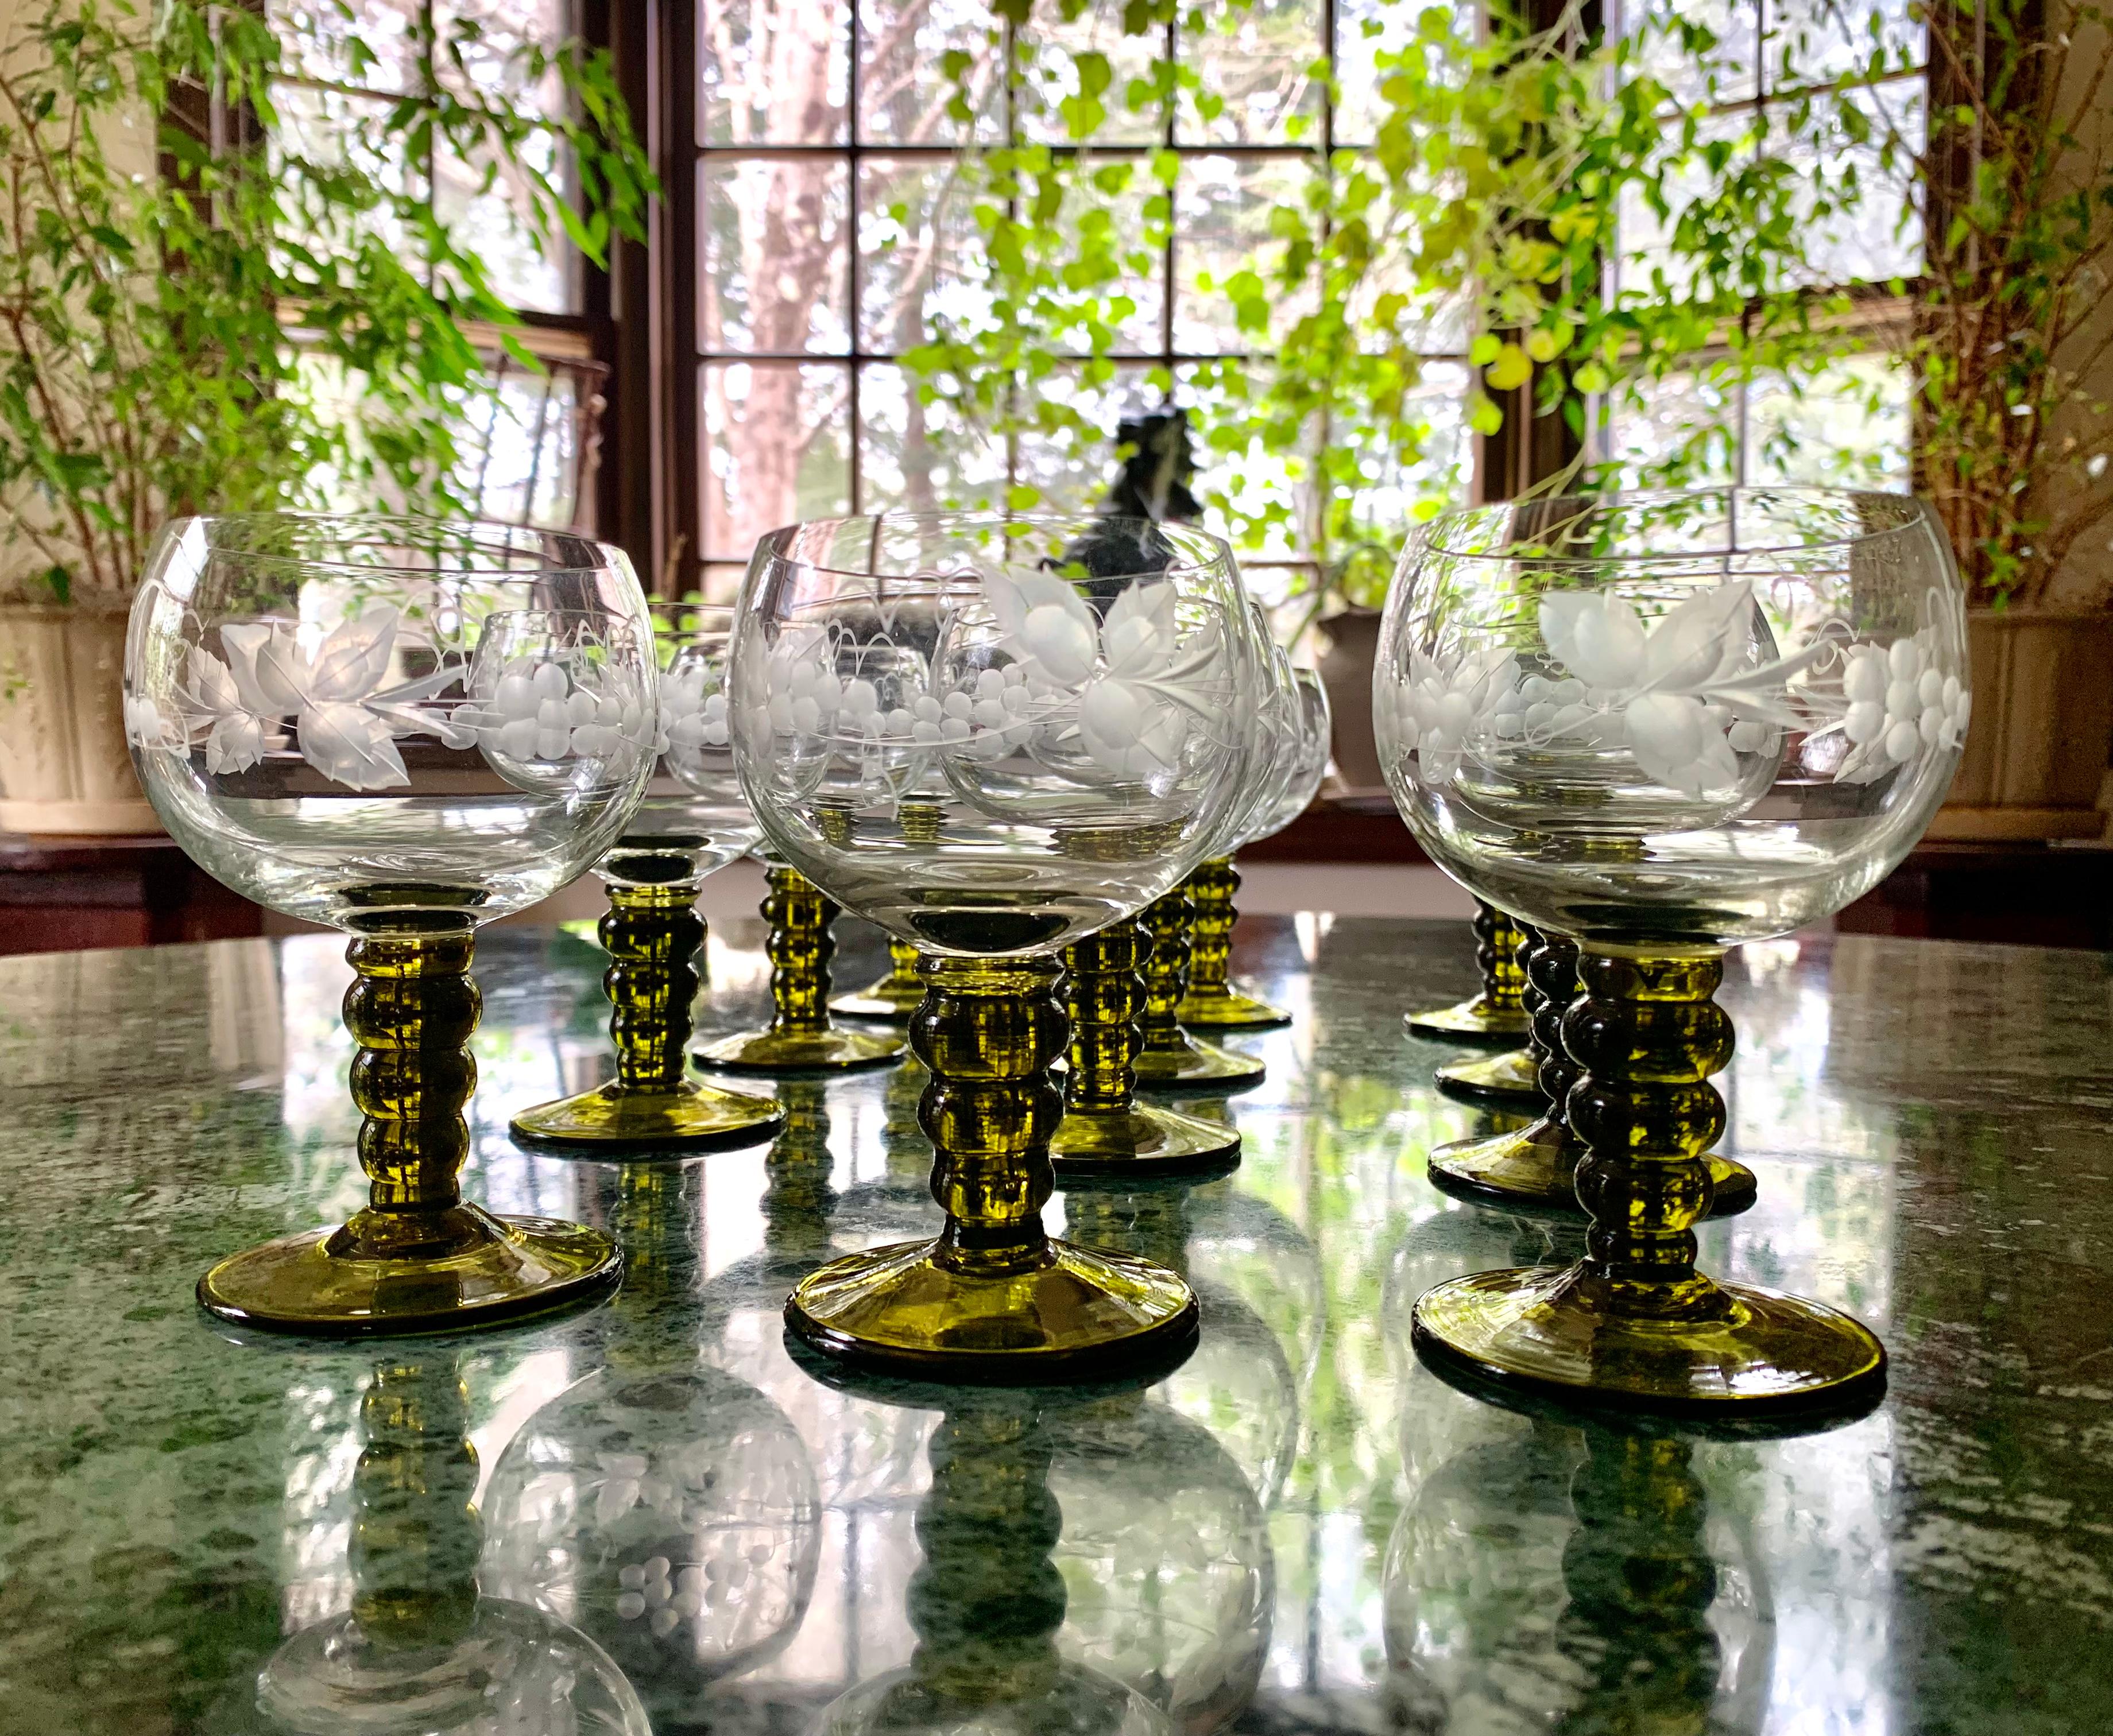 Dieses Set aus zwölf böhmischen Rheingläsern mit einem eingravierten Weinrebenmotiv auf dem Glaskörper und dem grünen Stiel eignet sich hervorragend für Gartenpartys. Mehrere Gläser haben eine eingravierte Fleur-de-Lis-Marke auf dem Boden.
Alle